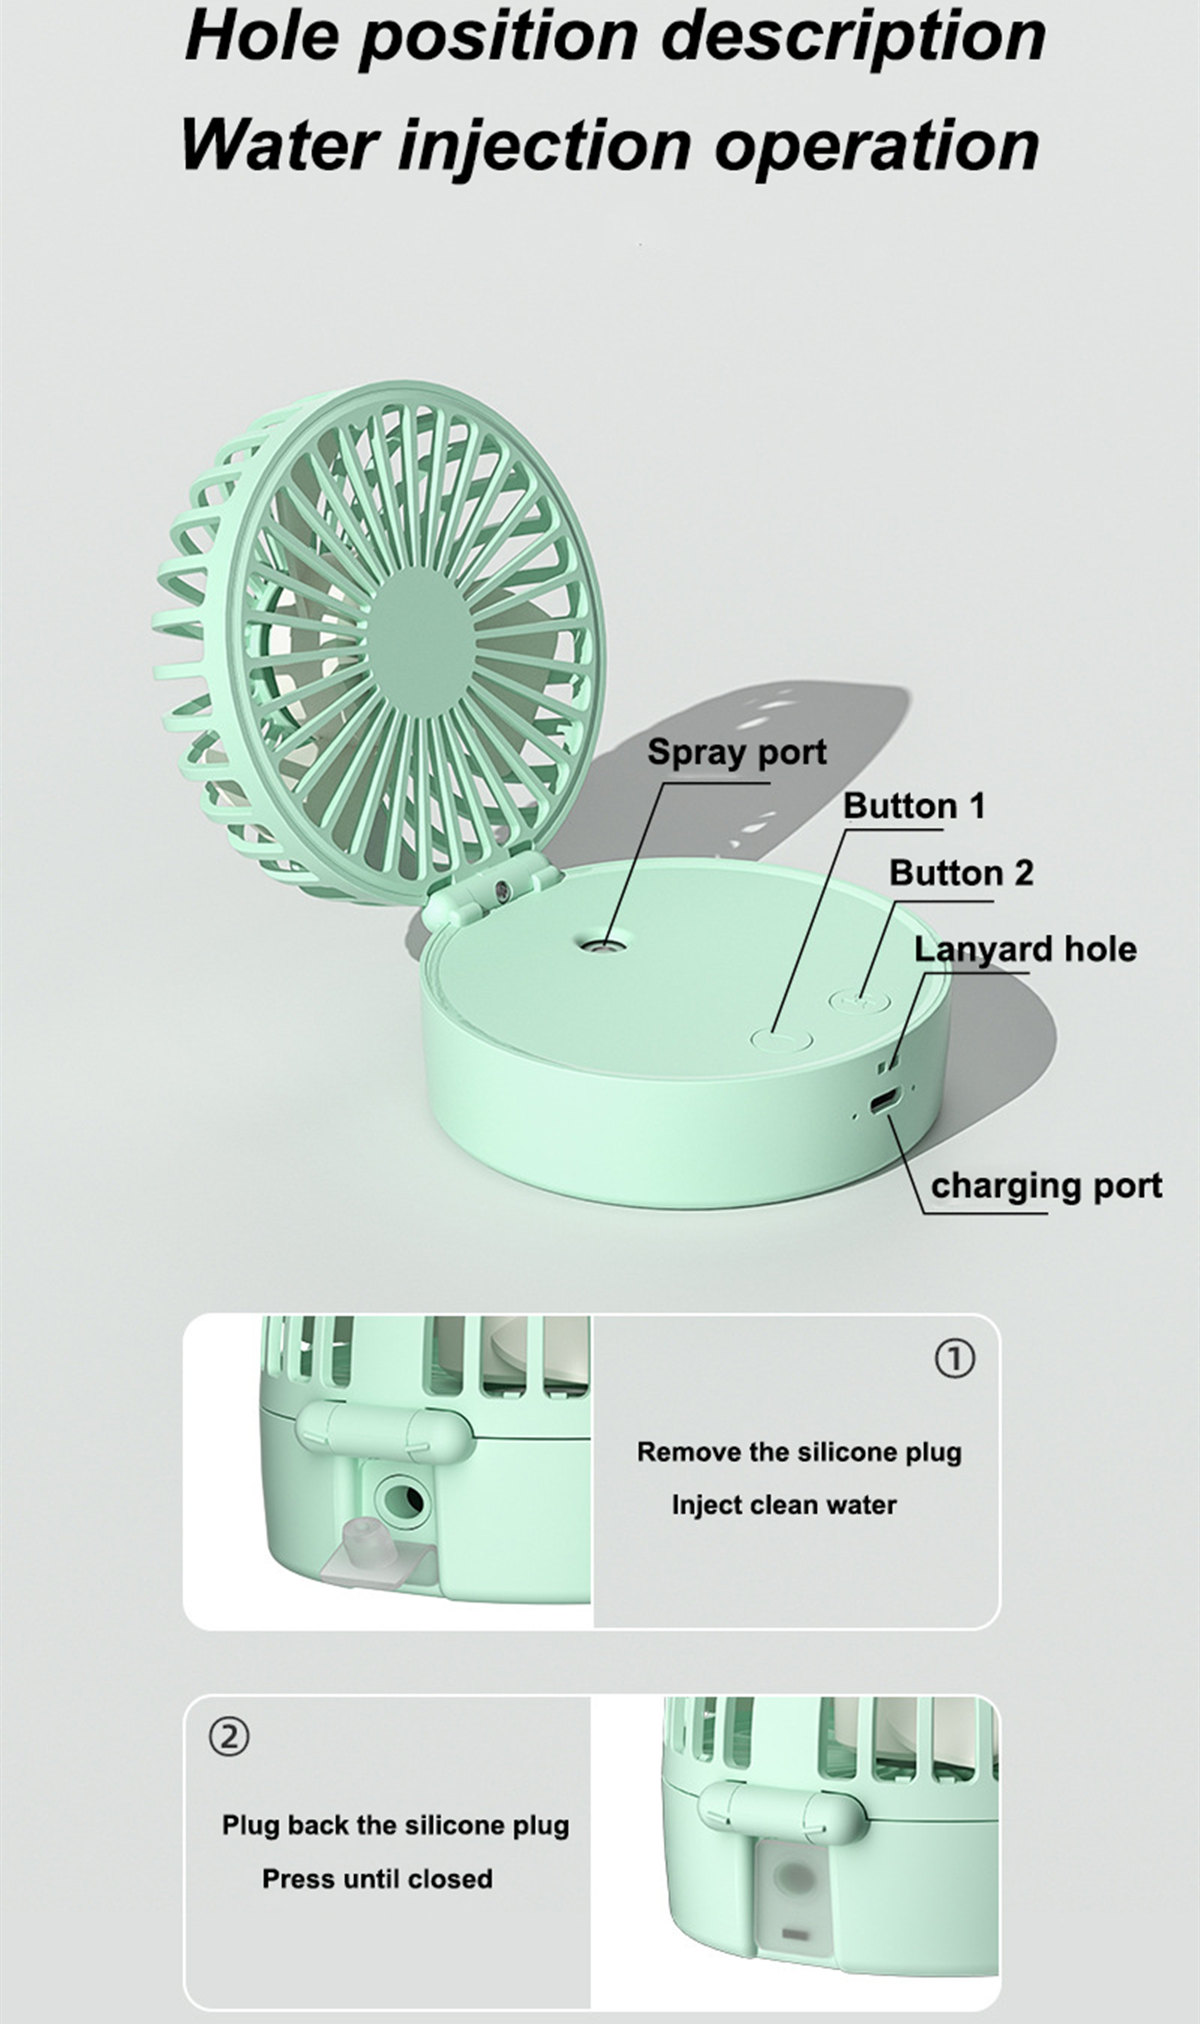 desk humidifier fan